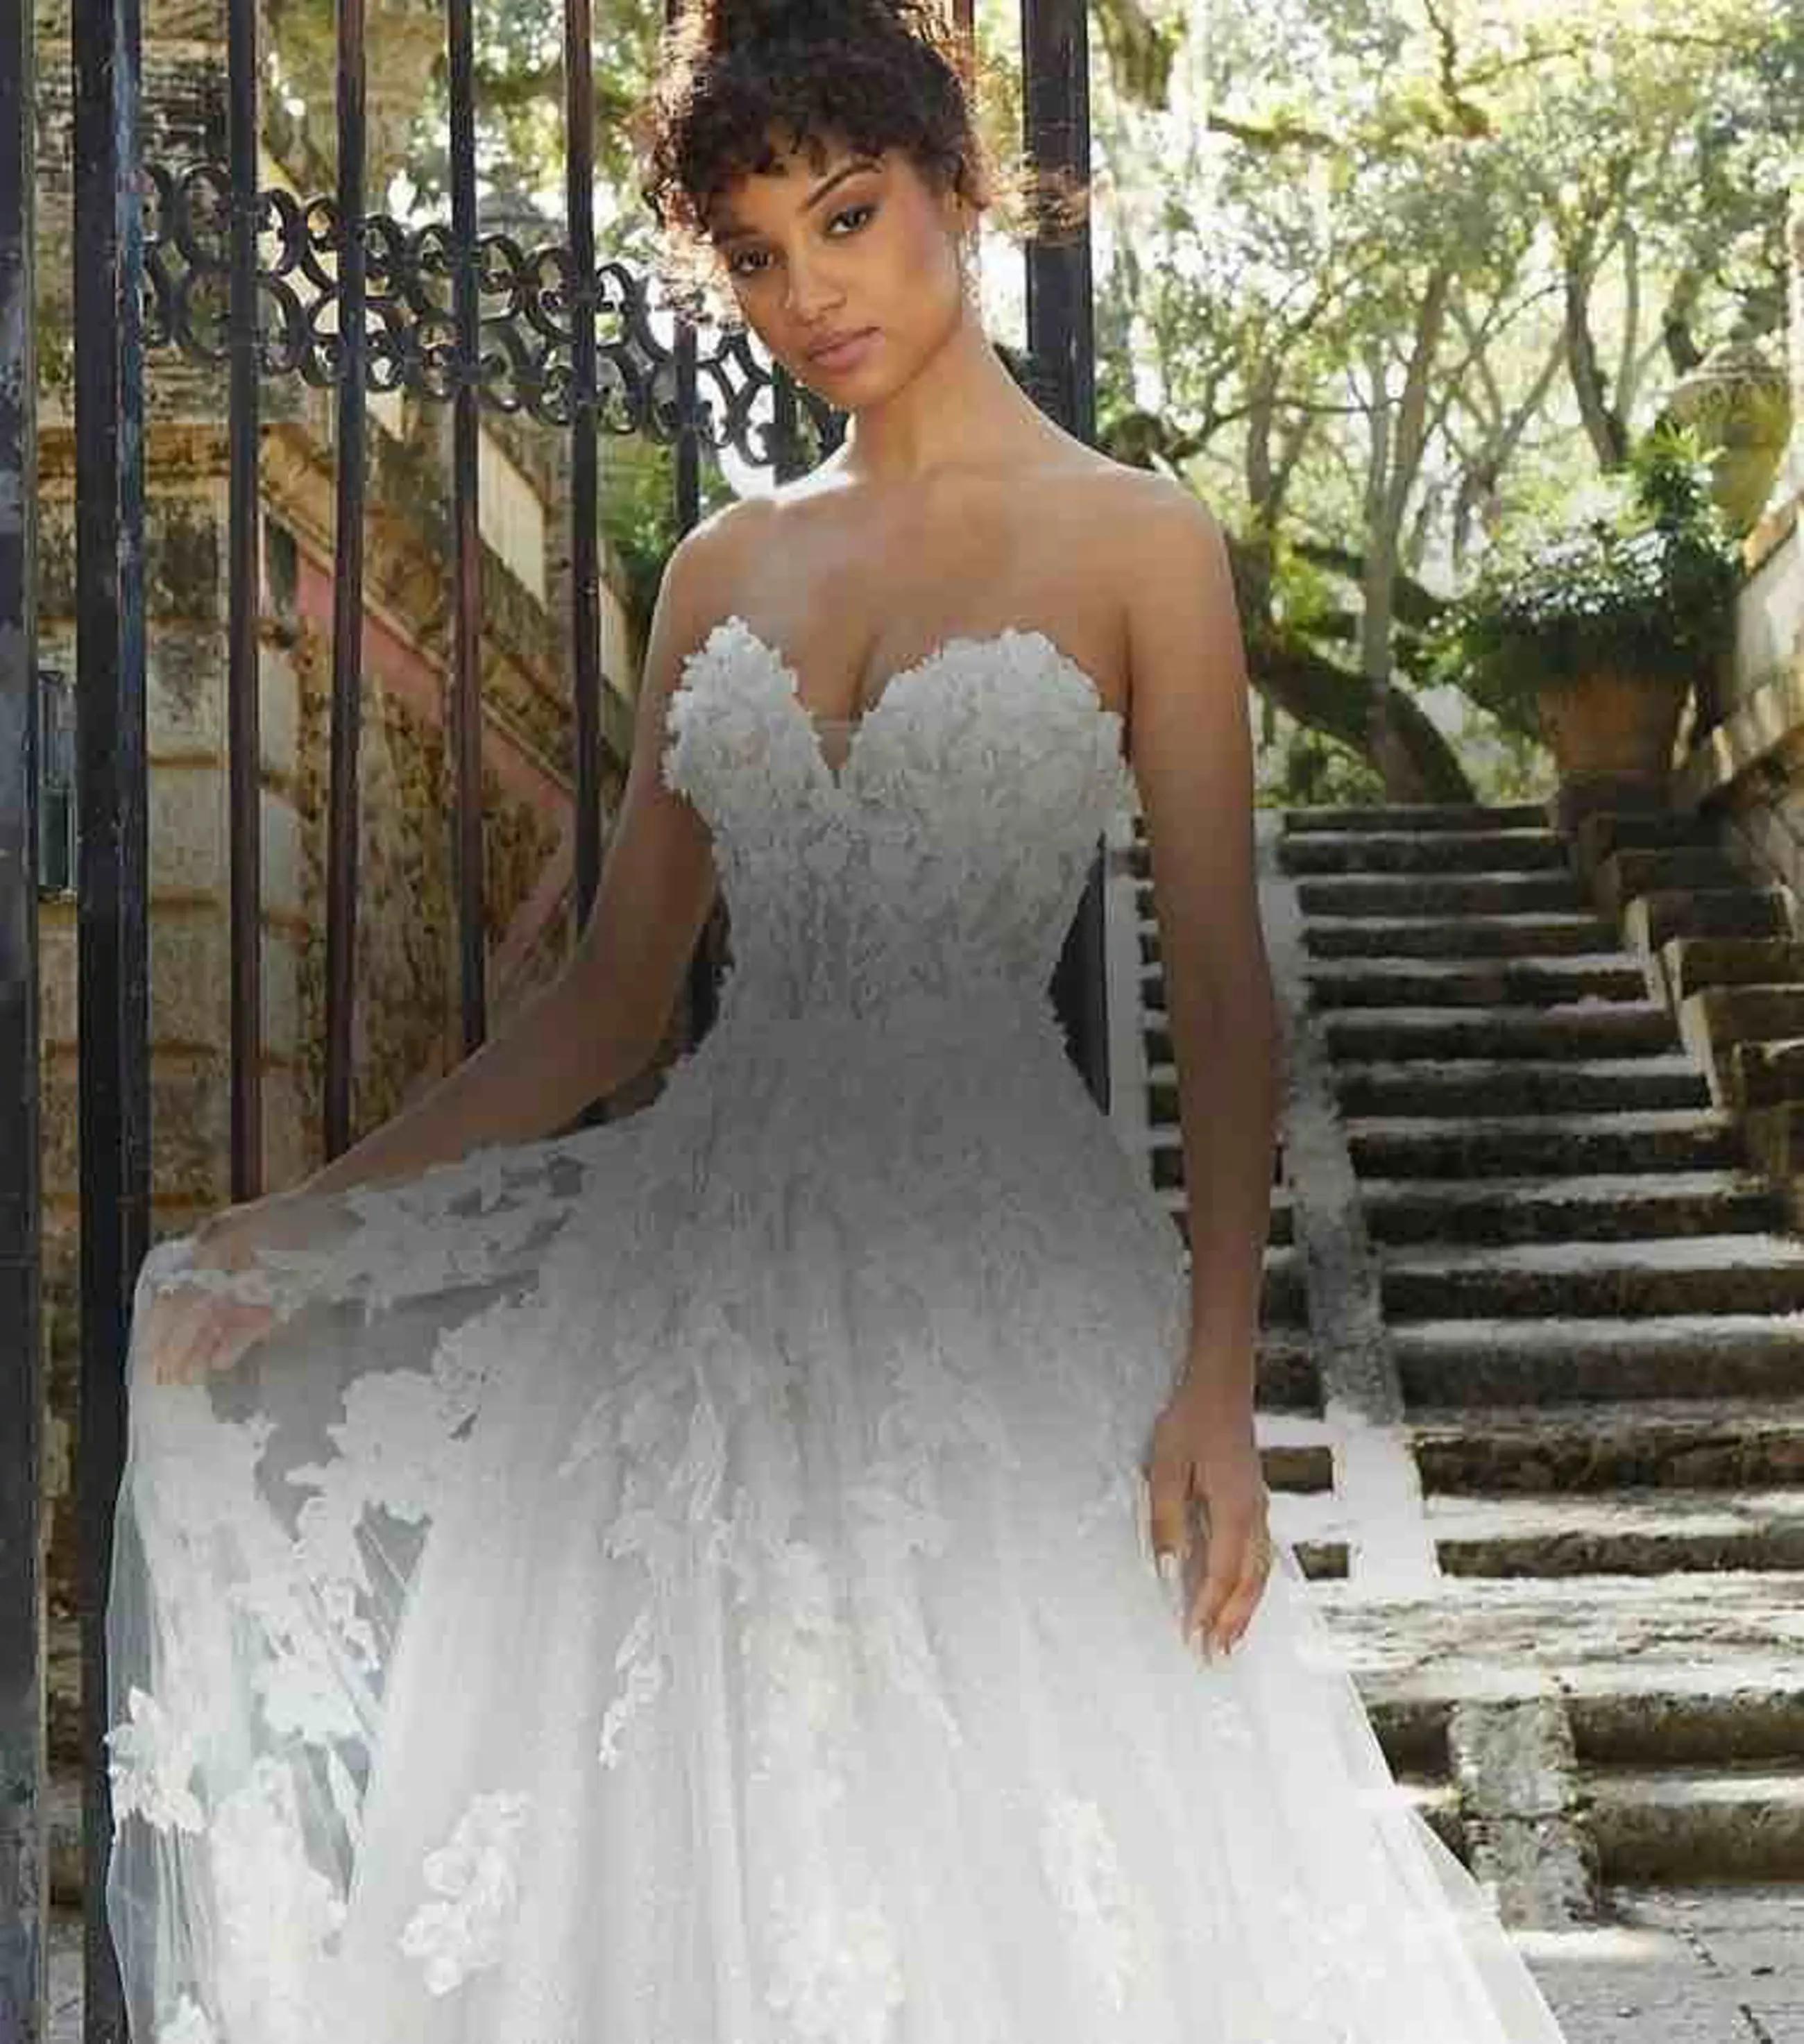 Wedding Gowns - Buy Wedding Wear Gown Online at Best Price